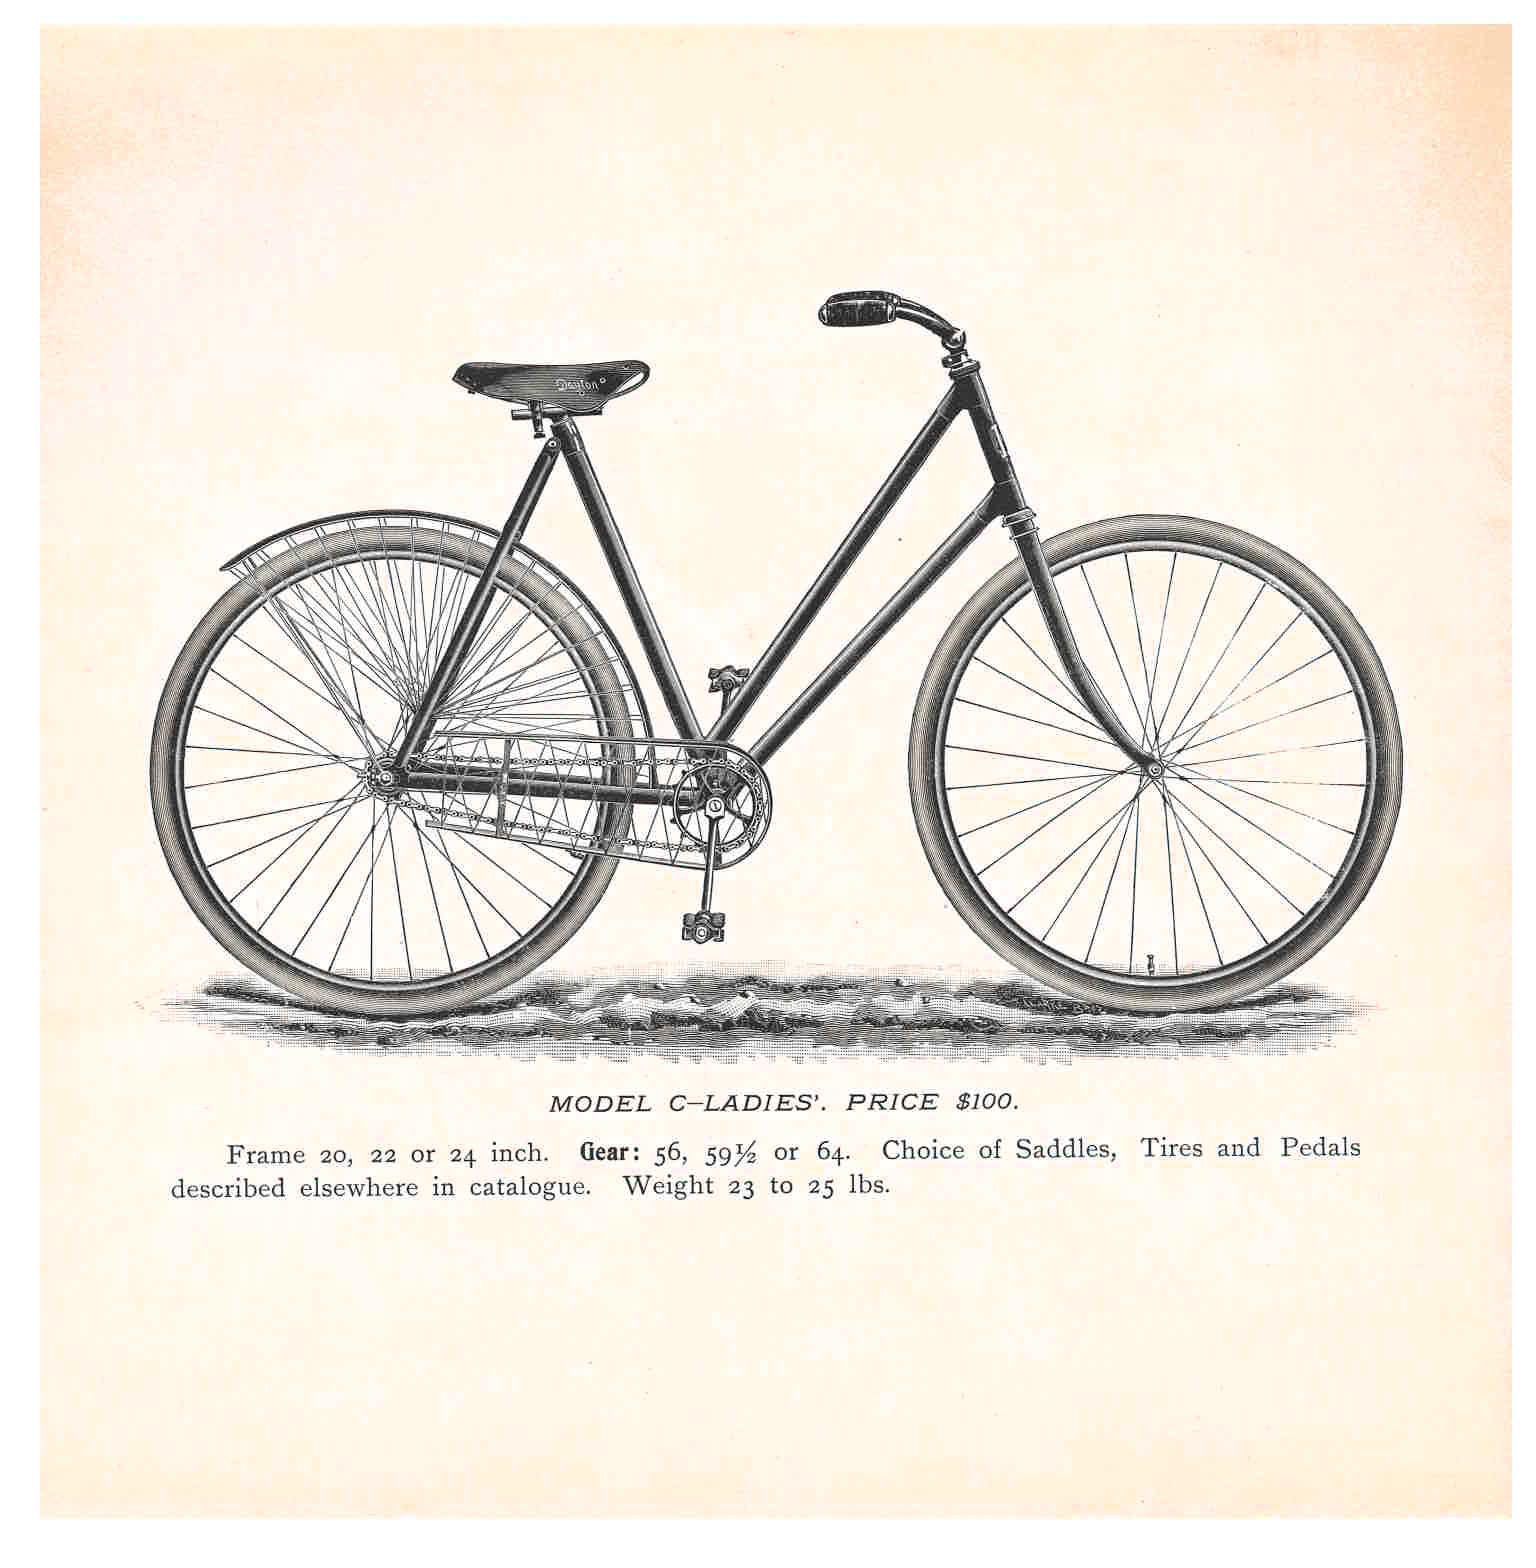 Model C-Ladies’ Bicycle